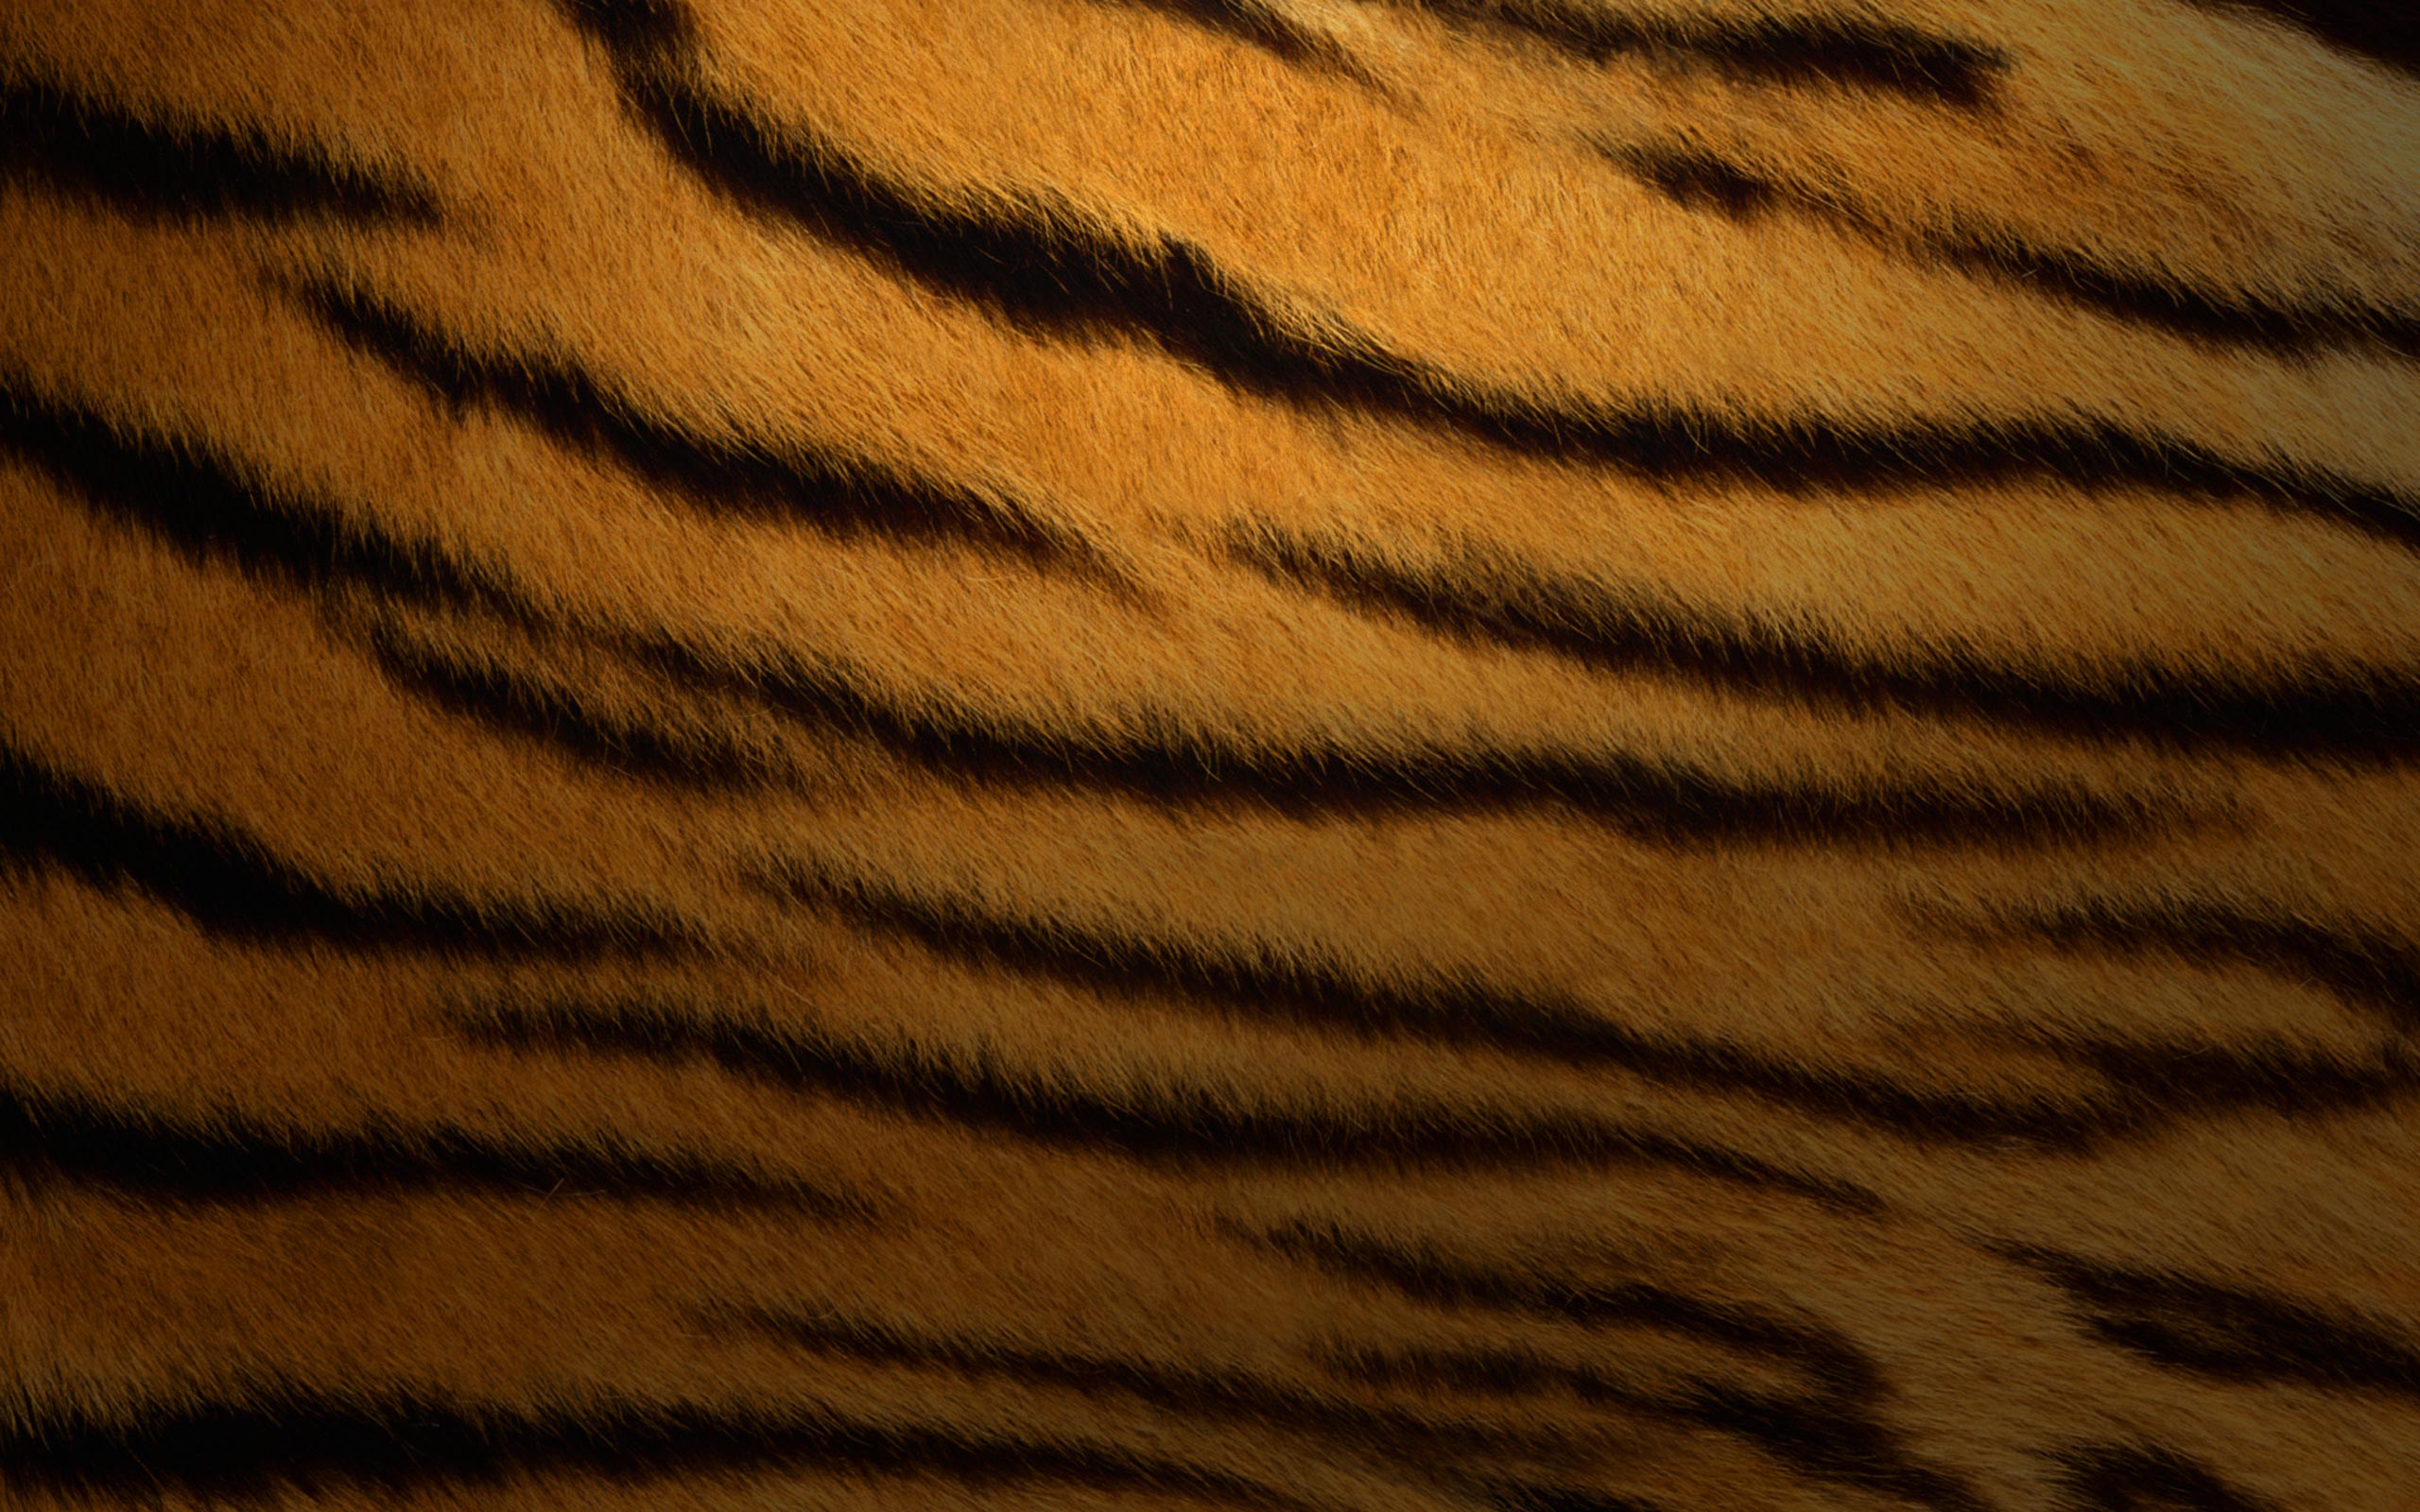 tigers, fur, textures, stripes - desktop wallpaper